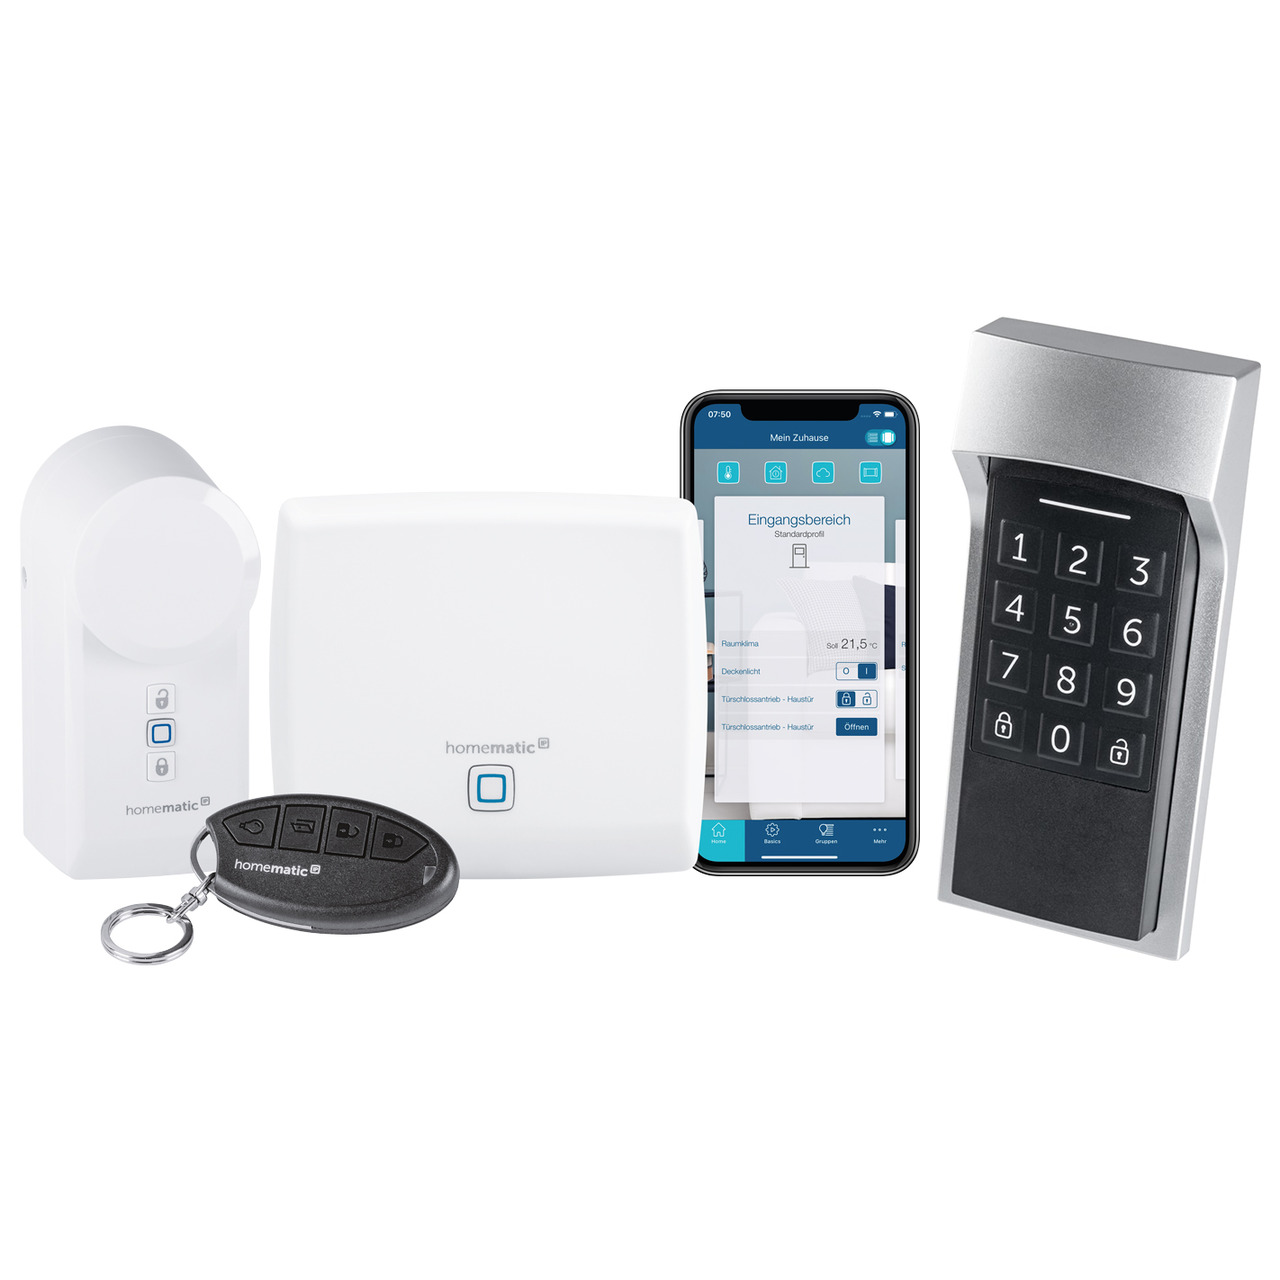 Homematic IP Smart Home Zugangslösung mit Access Point- Türschlossantrieb- Keypad und Fernbedienung